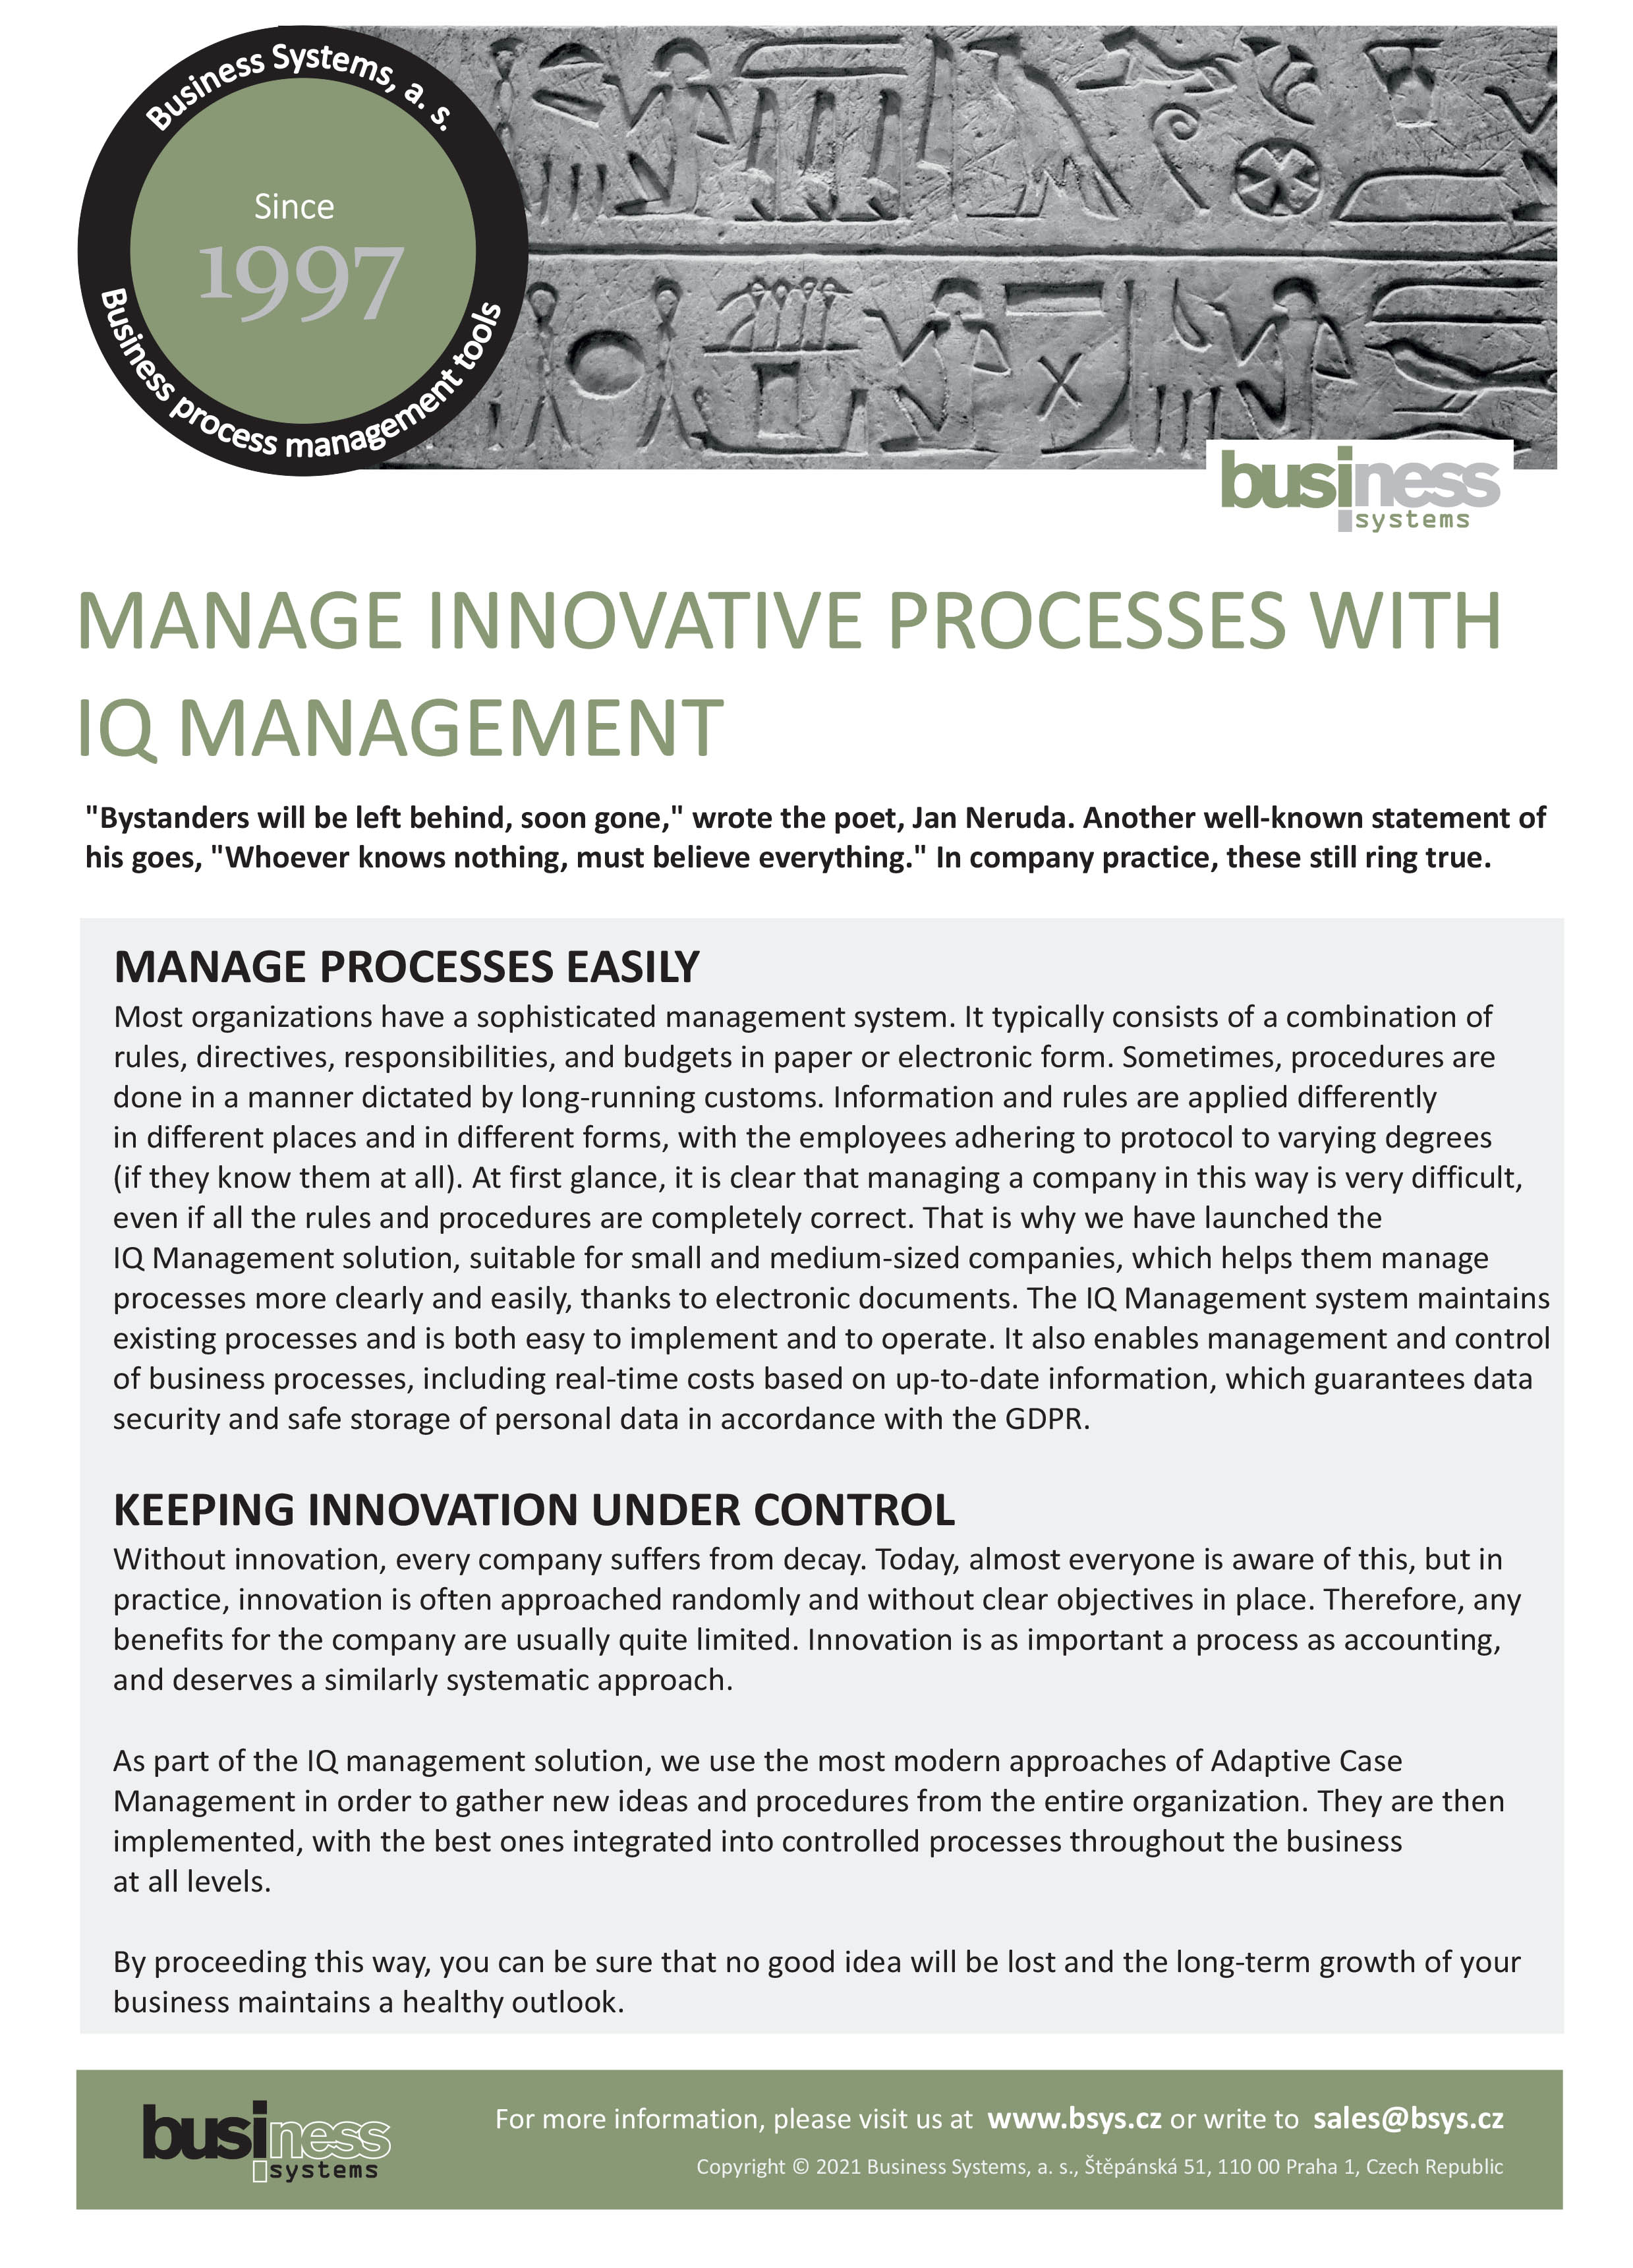 IQ Management - process management